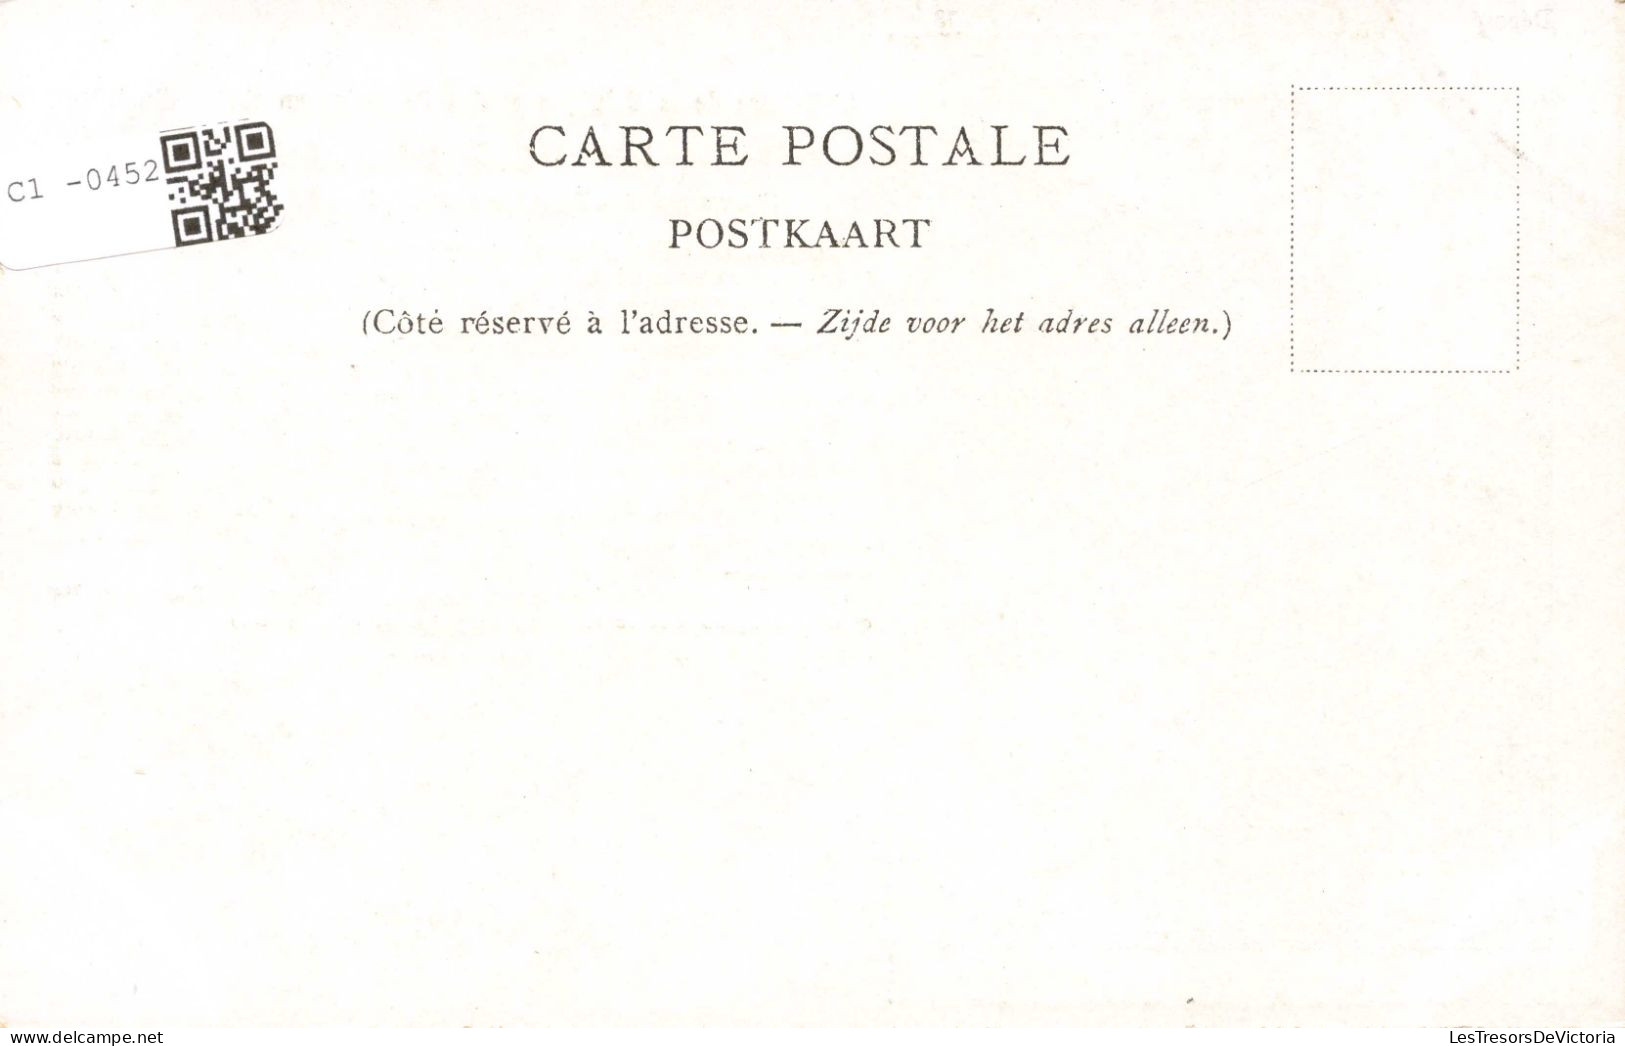 CELEBRITES - Hommes Politiques - Le Duc D'Albe - Gouverneur Des Pays-Bas Sous Philippe II - Carte Postale Ancienne - Politische Und Militärische Männer